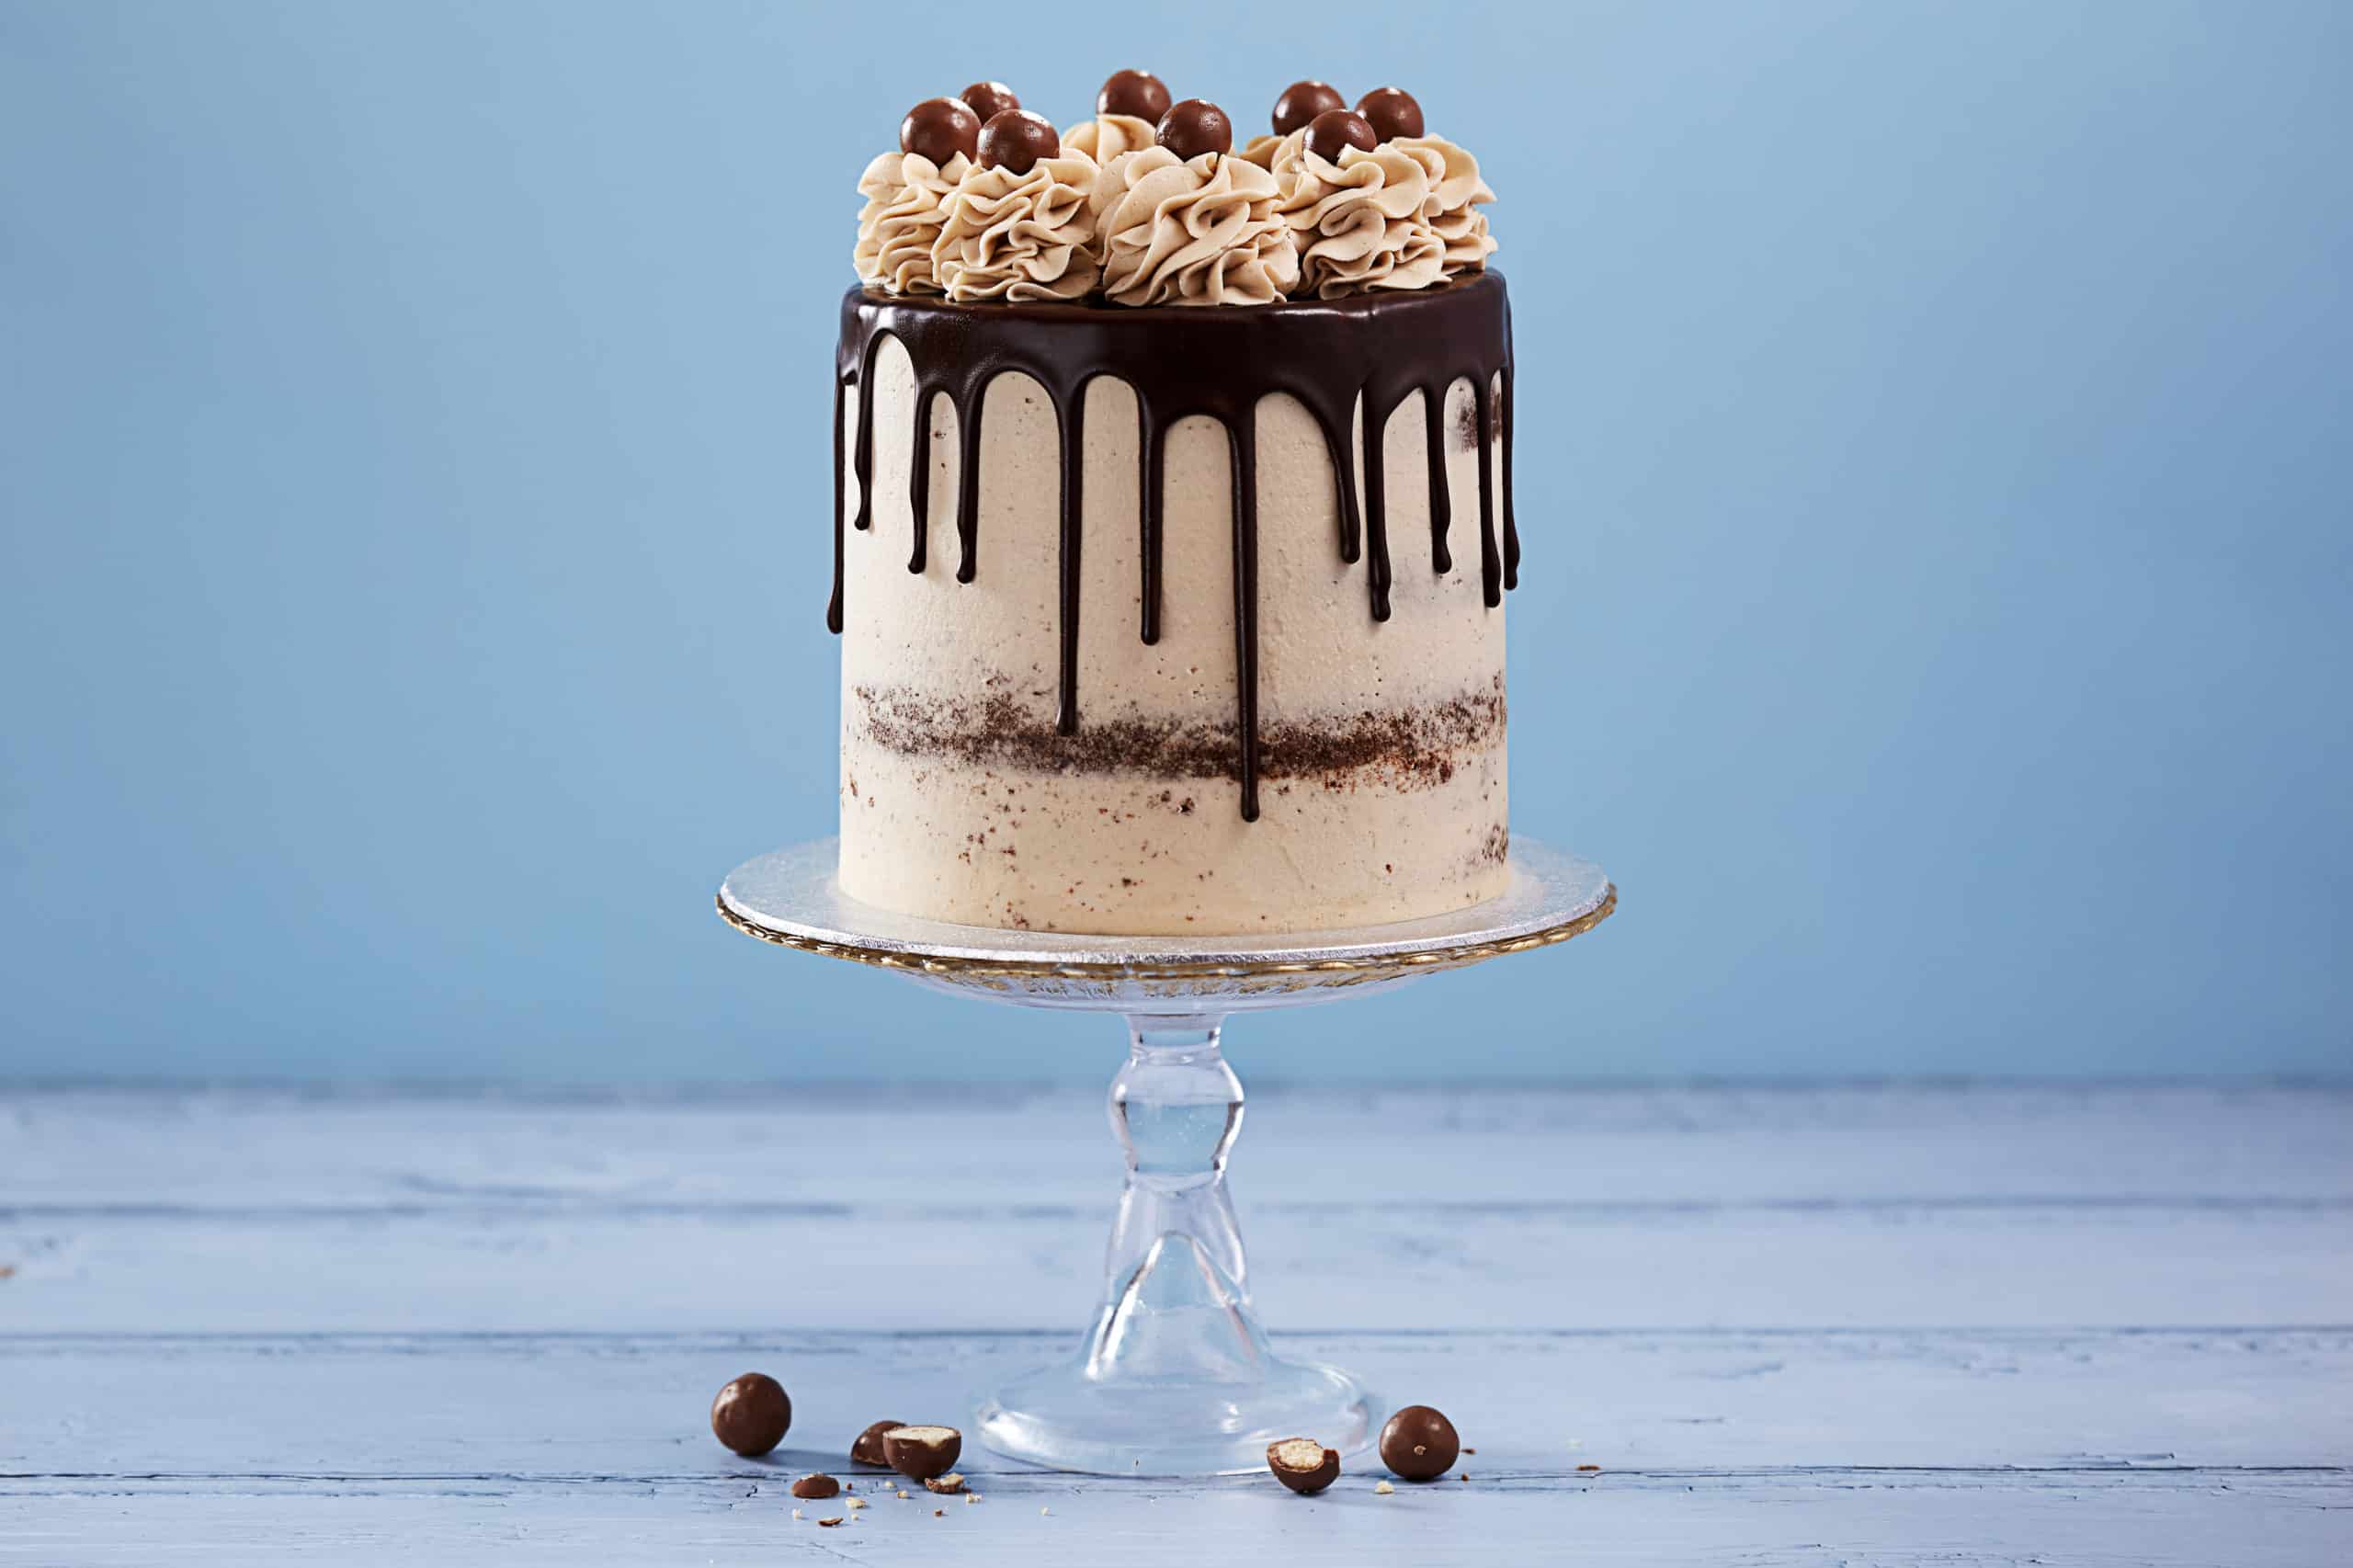 Malteser Chocolate Drip Cake